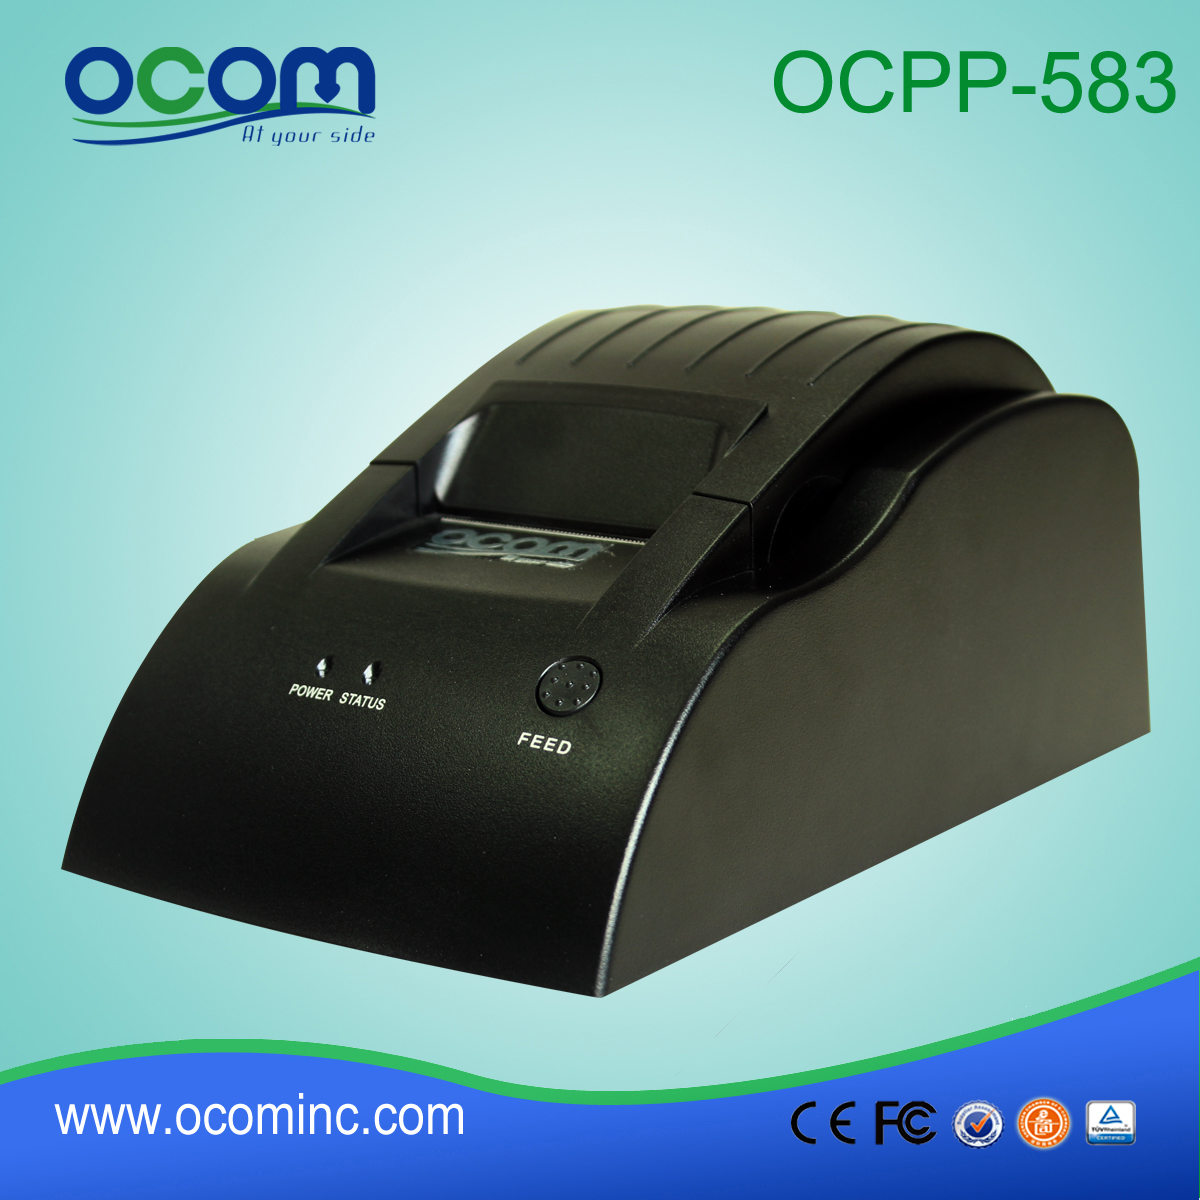 Billiger Modell OCPP-583-U 58mm Kassensystem USB Thermal Ticket Quittungsdrucker